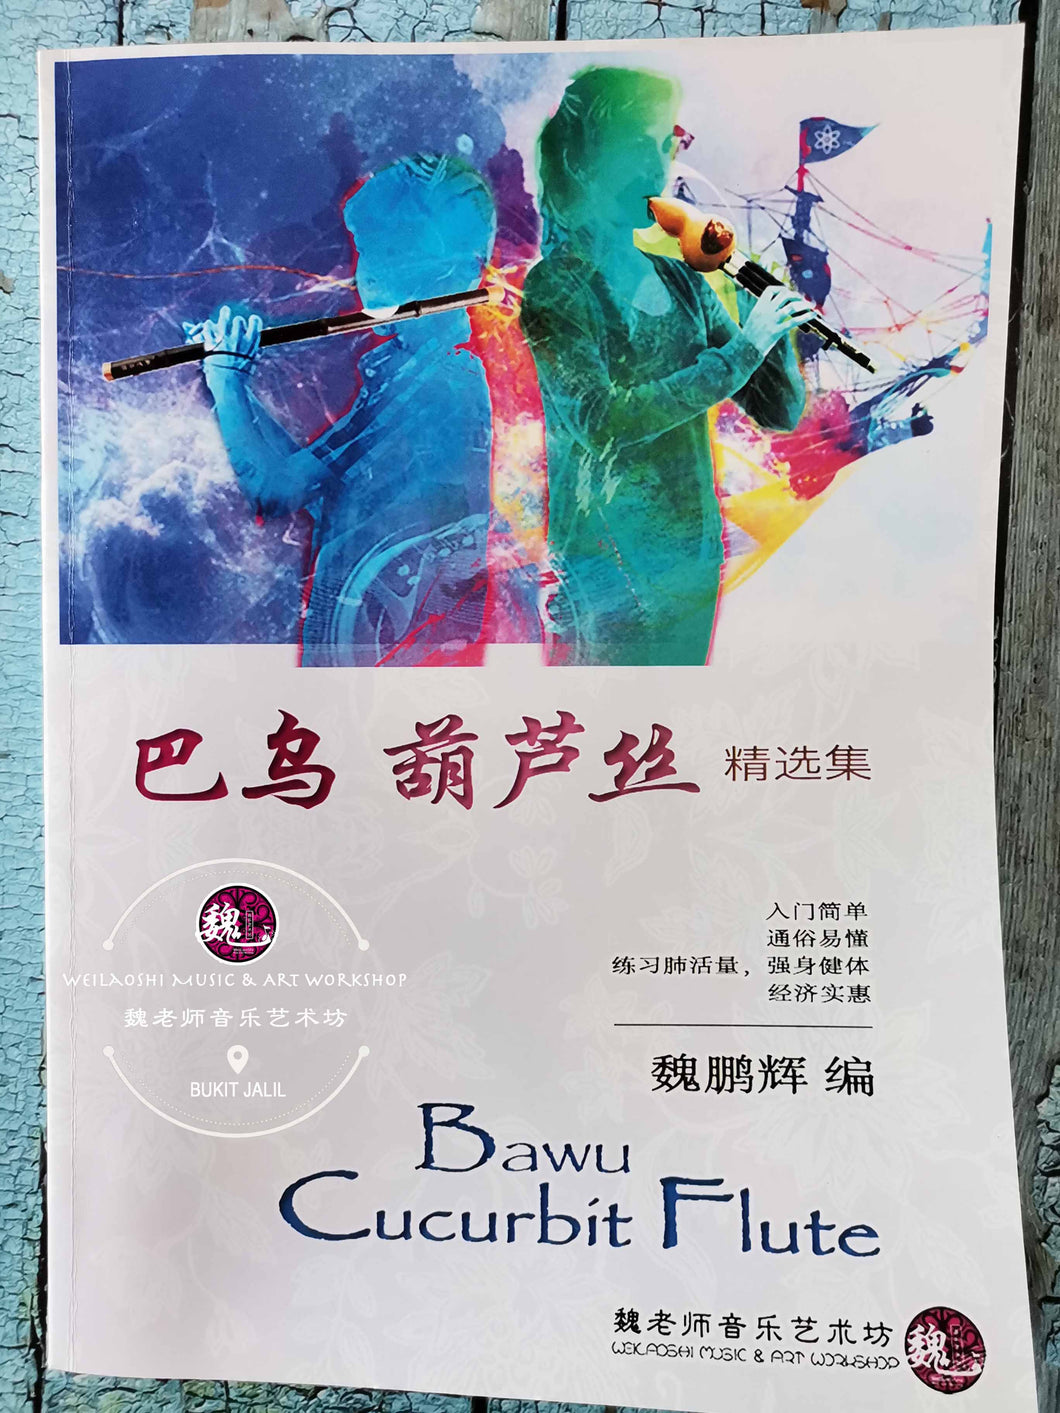 Bawu Cucurbit Flute ™ 巴乌葫芦丝精选集